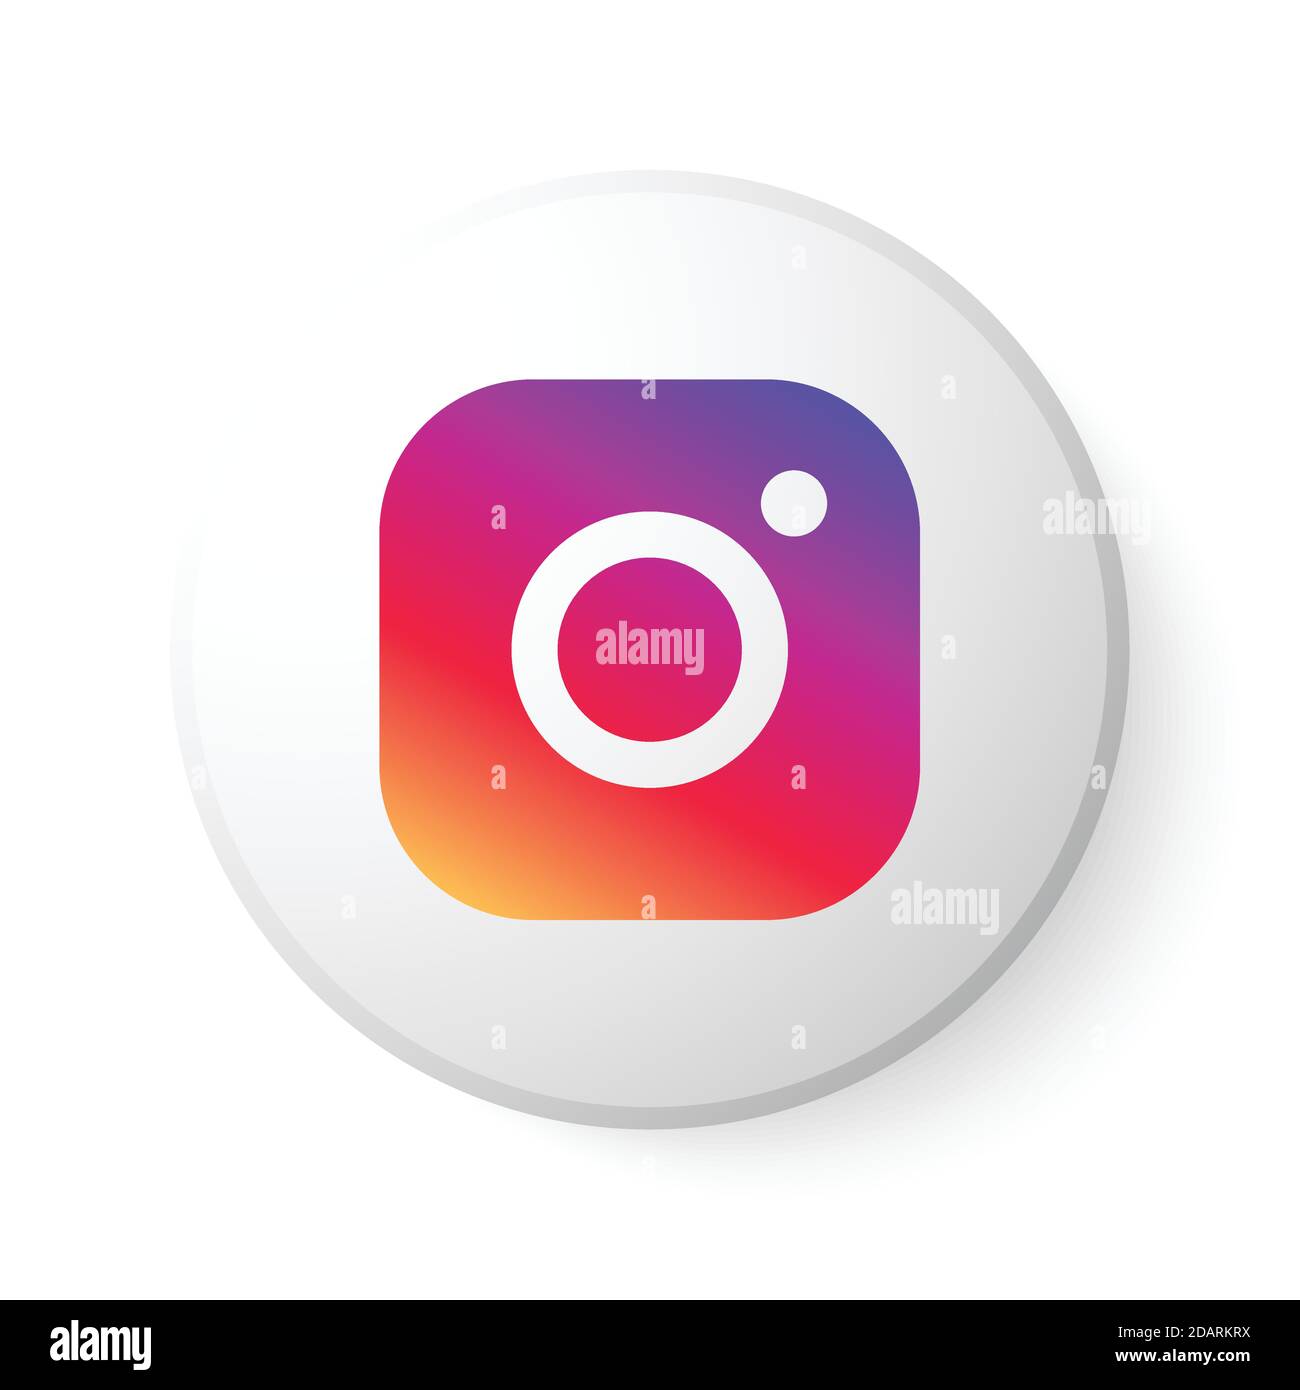 Nút tròn Instagram với đa màu sắc: Nút tròn Instagram với đa màu sắc sẽ giúp trang cá nhân của bạn trở nên sinh động và thu hút hơn. Với những sự lựa chọn đa dạng trong màu sắc, bạn sẽ tìm thấy sự kết hợp màu sắc tuyệt vời cho trang cá nhân của mình.